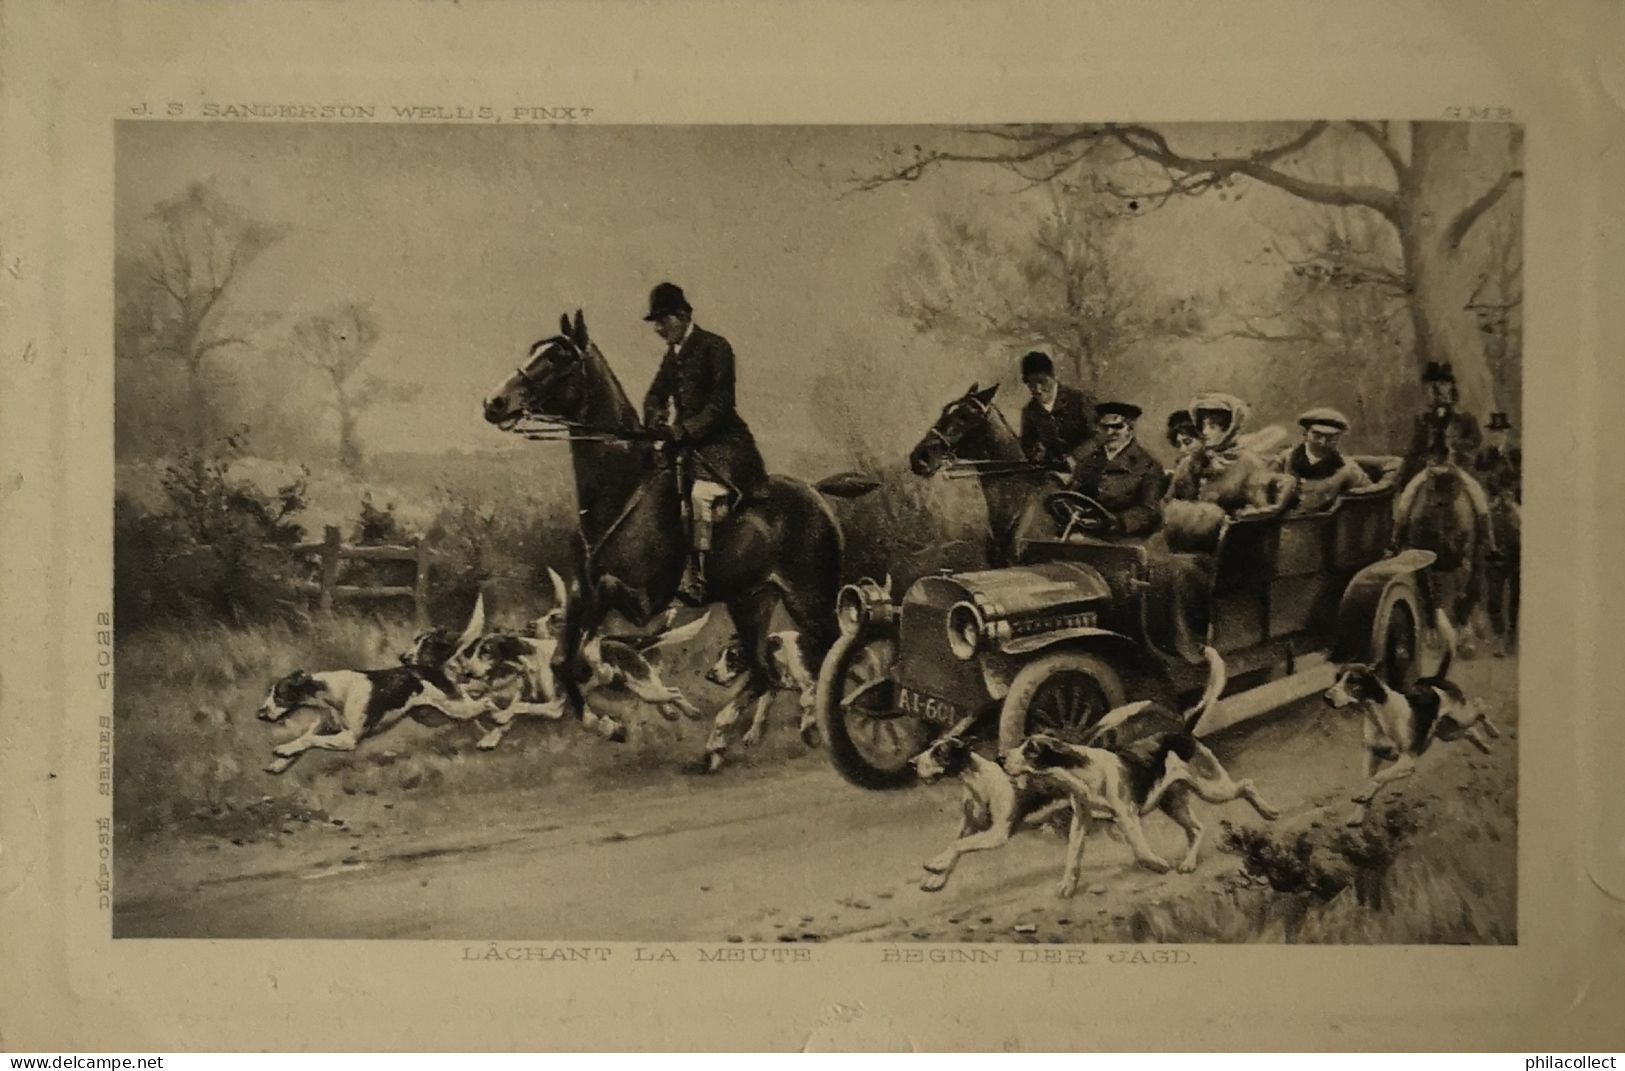 Horses - Hunt - Automobile // Pinx. J. S. Sanderson Wells Lachant La Meute 19?? - Hippisme